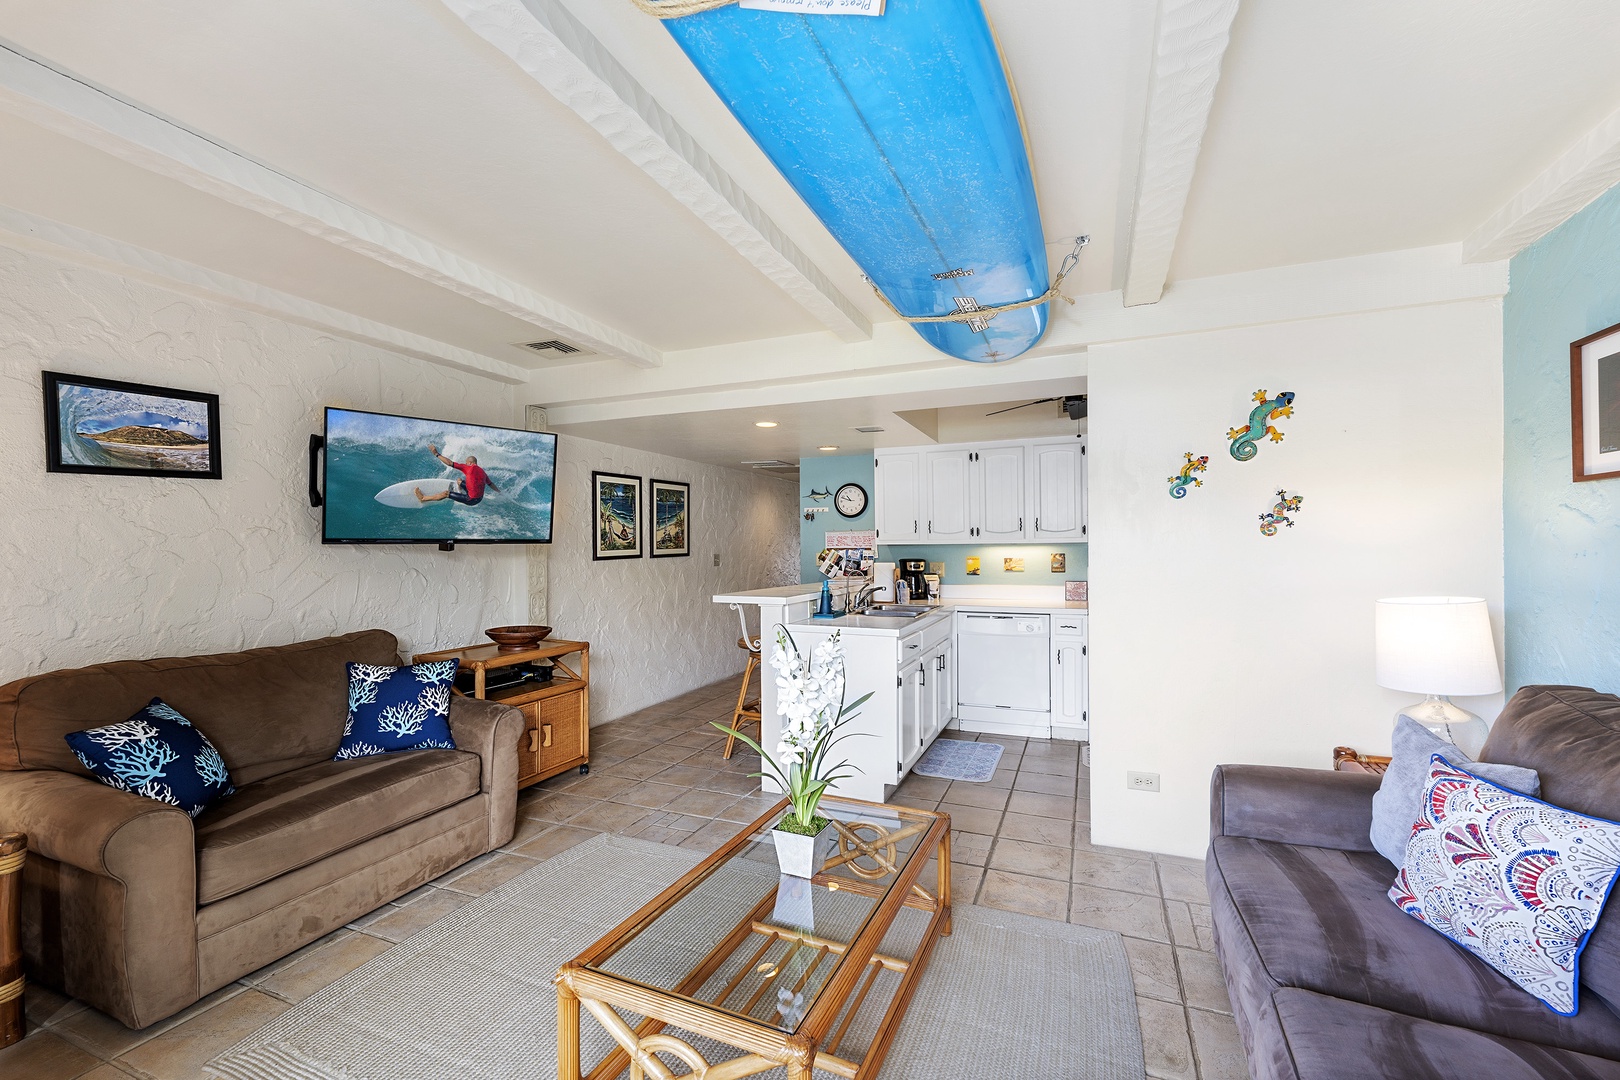 Kailua Kona Vacation Rentals, Casa De Emdeko 222 - Living room features cable TV